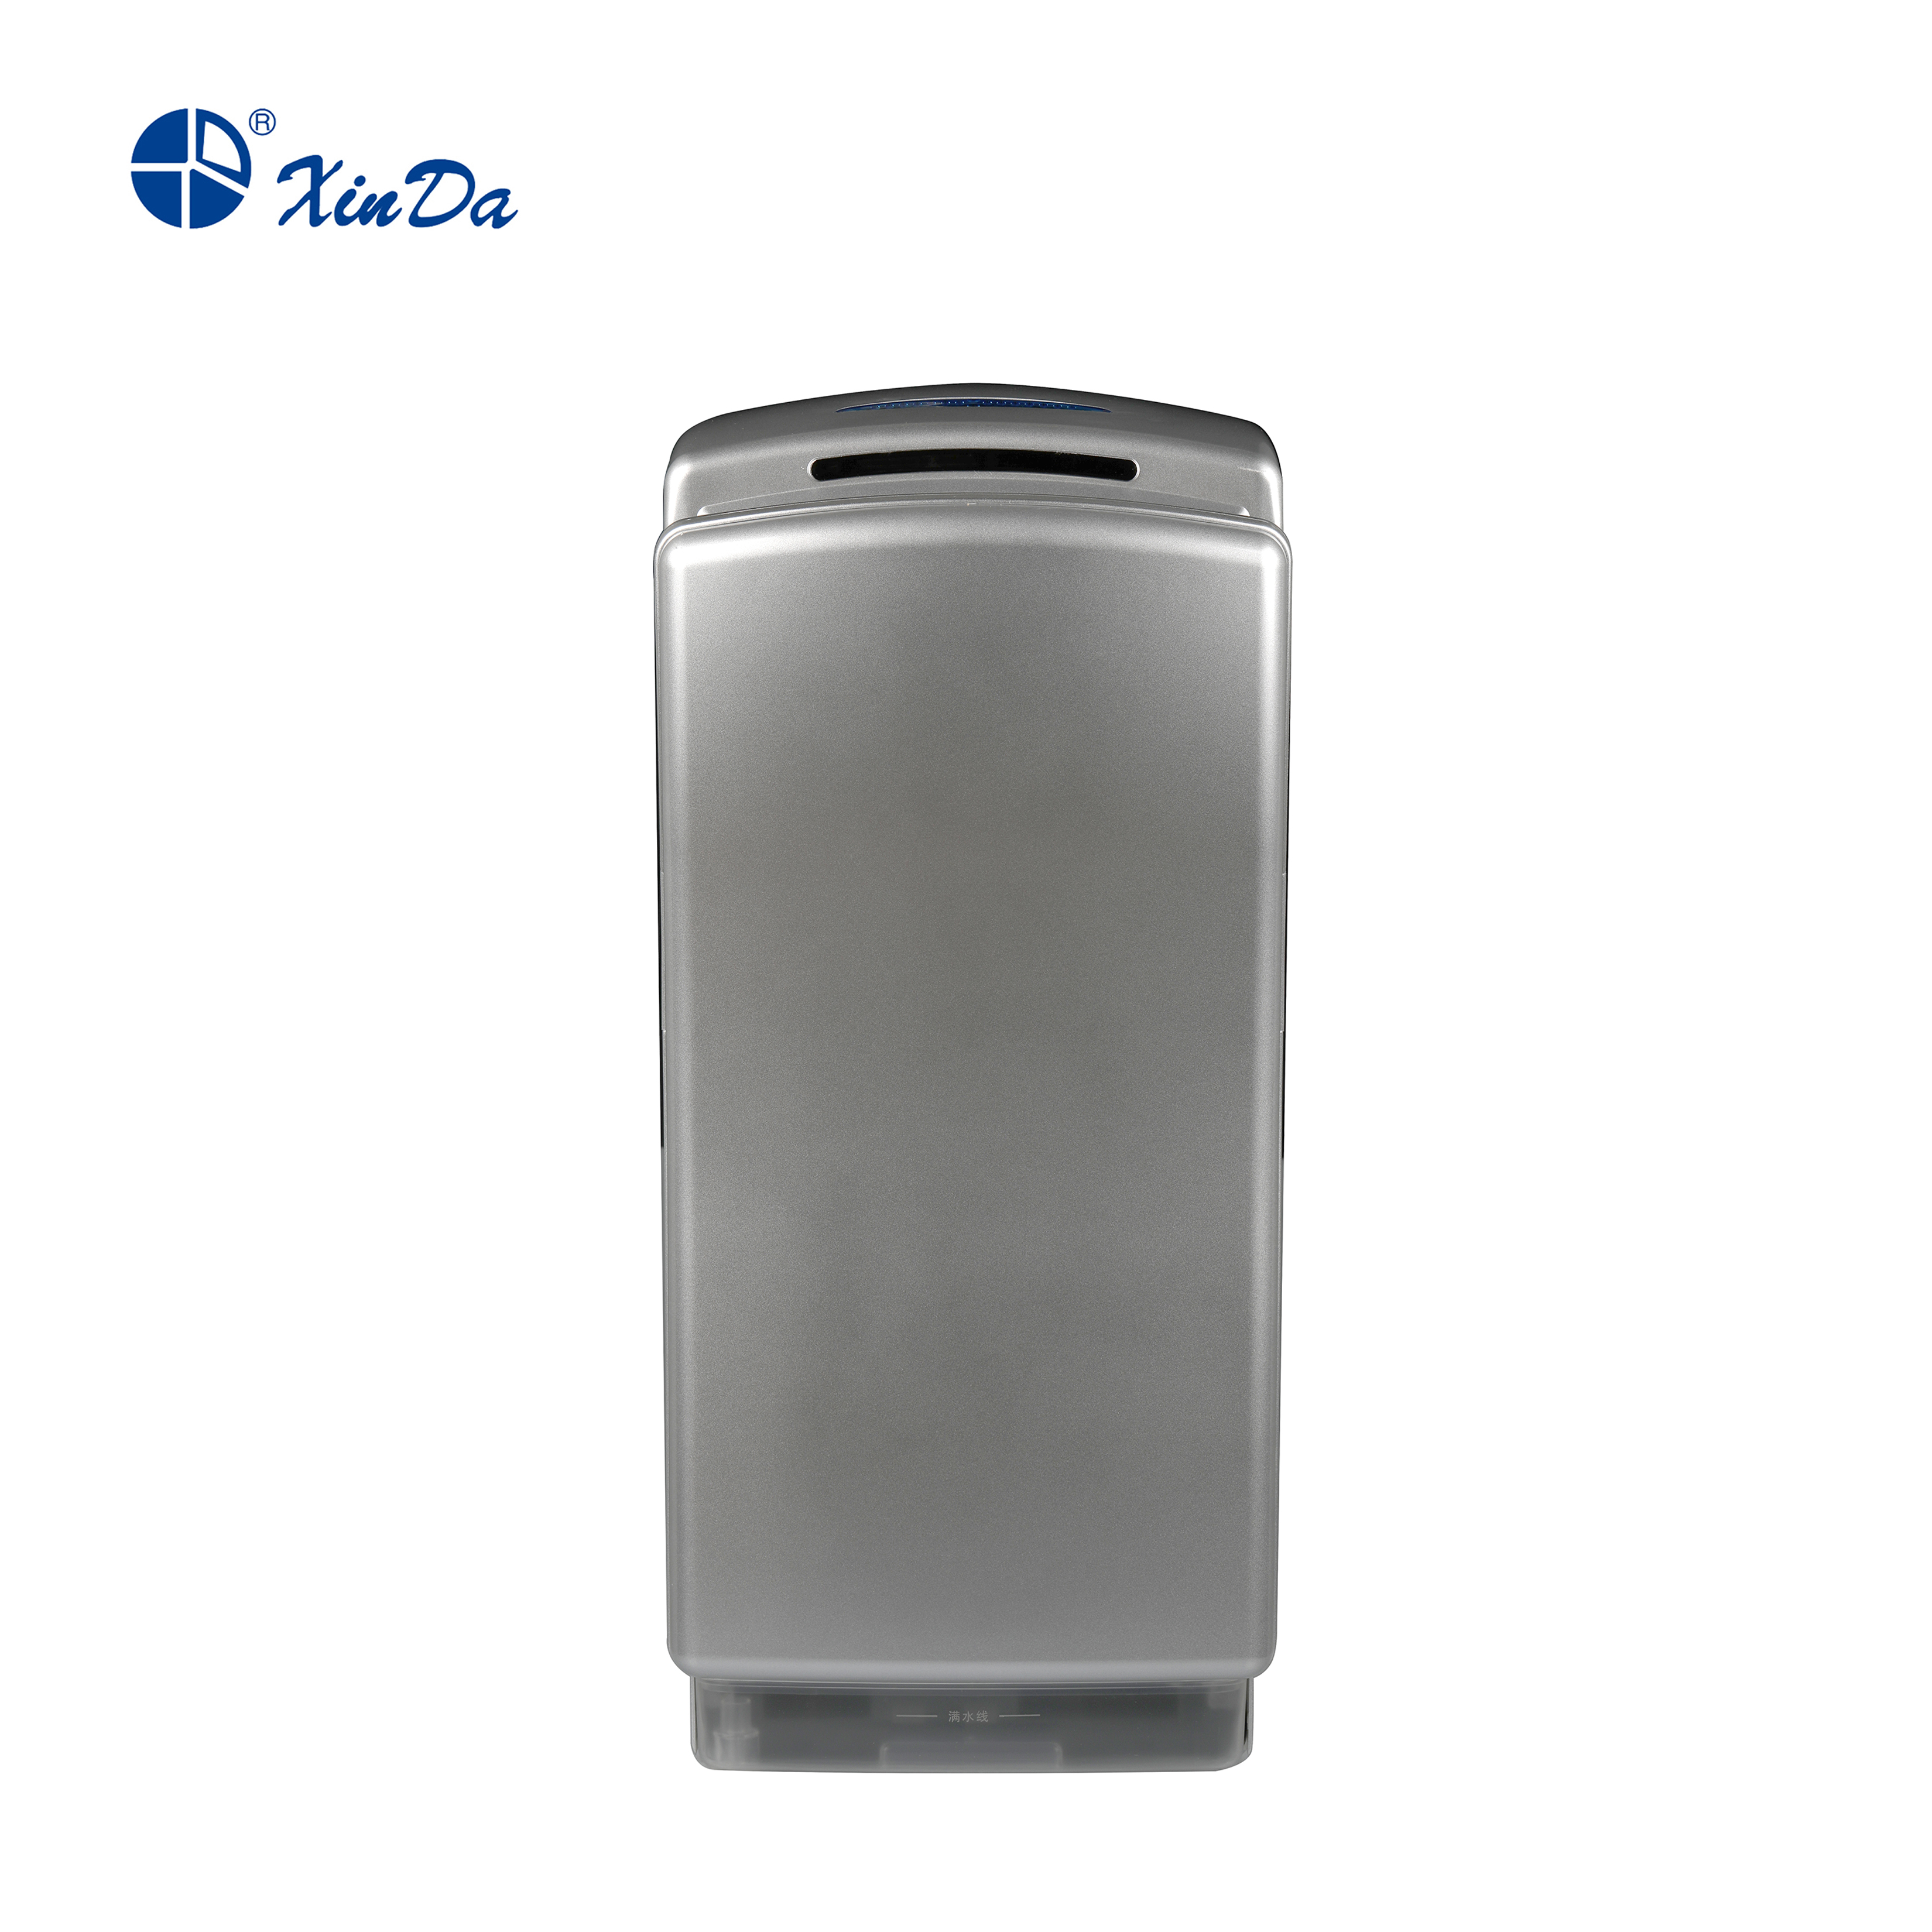 O XinDa GSQ80 Prata Aço Inoxidável Sensor de secador de ar a jato de alta velocidade Secador de Mãos Secador de Mãos